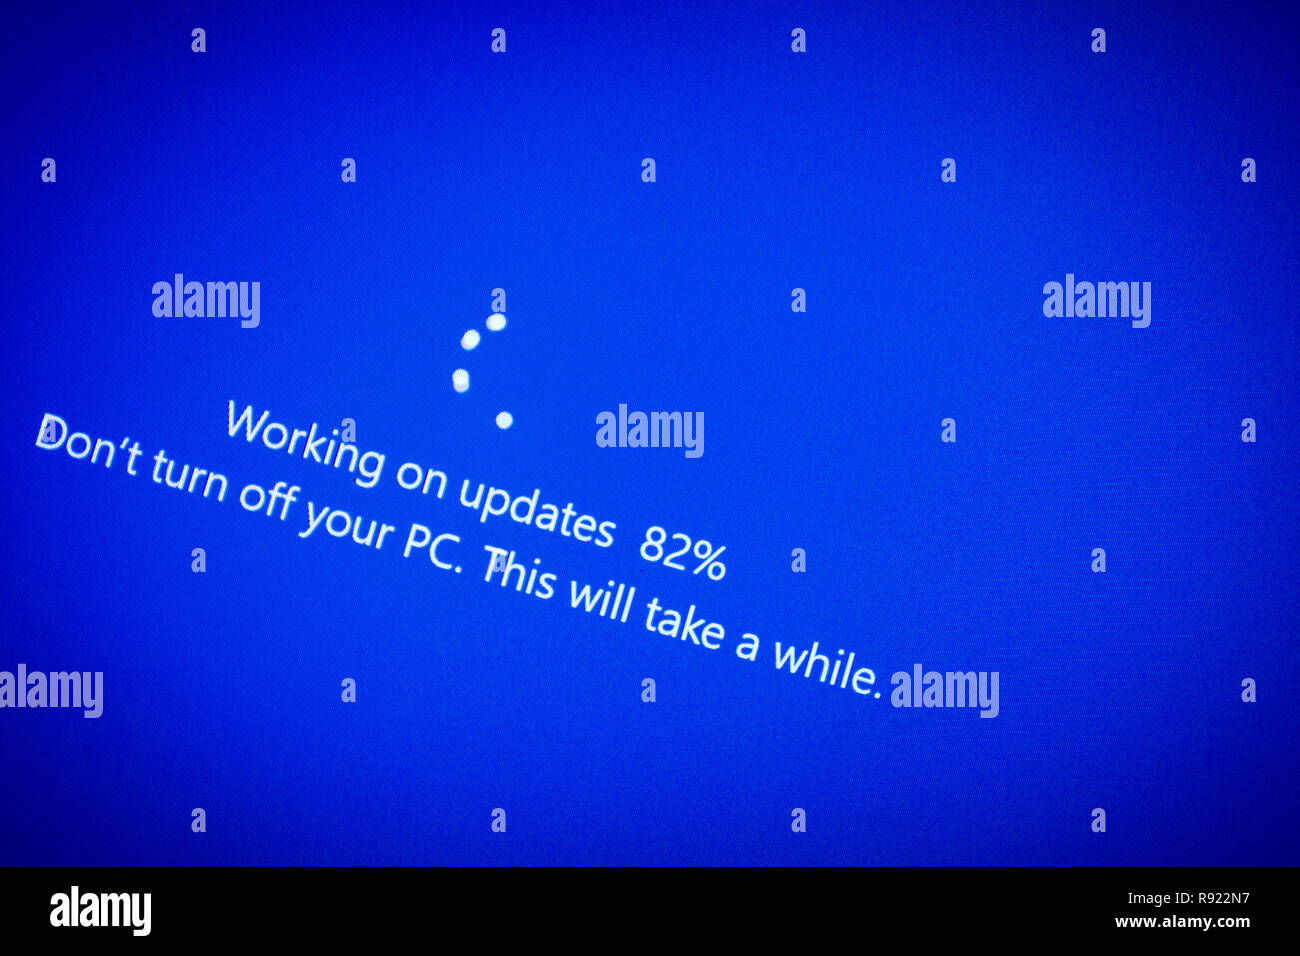 Une chose commune pour les utilisateurs d'ordinateurs PC Windows Windows 10 est l'écran de mise à jour bleu Banque D'Images